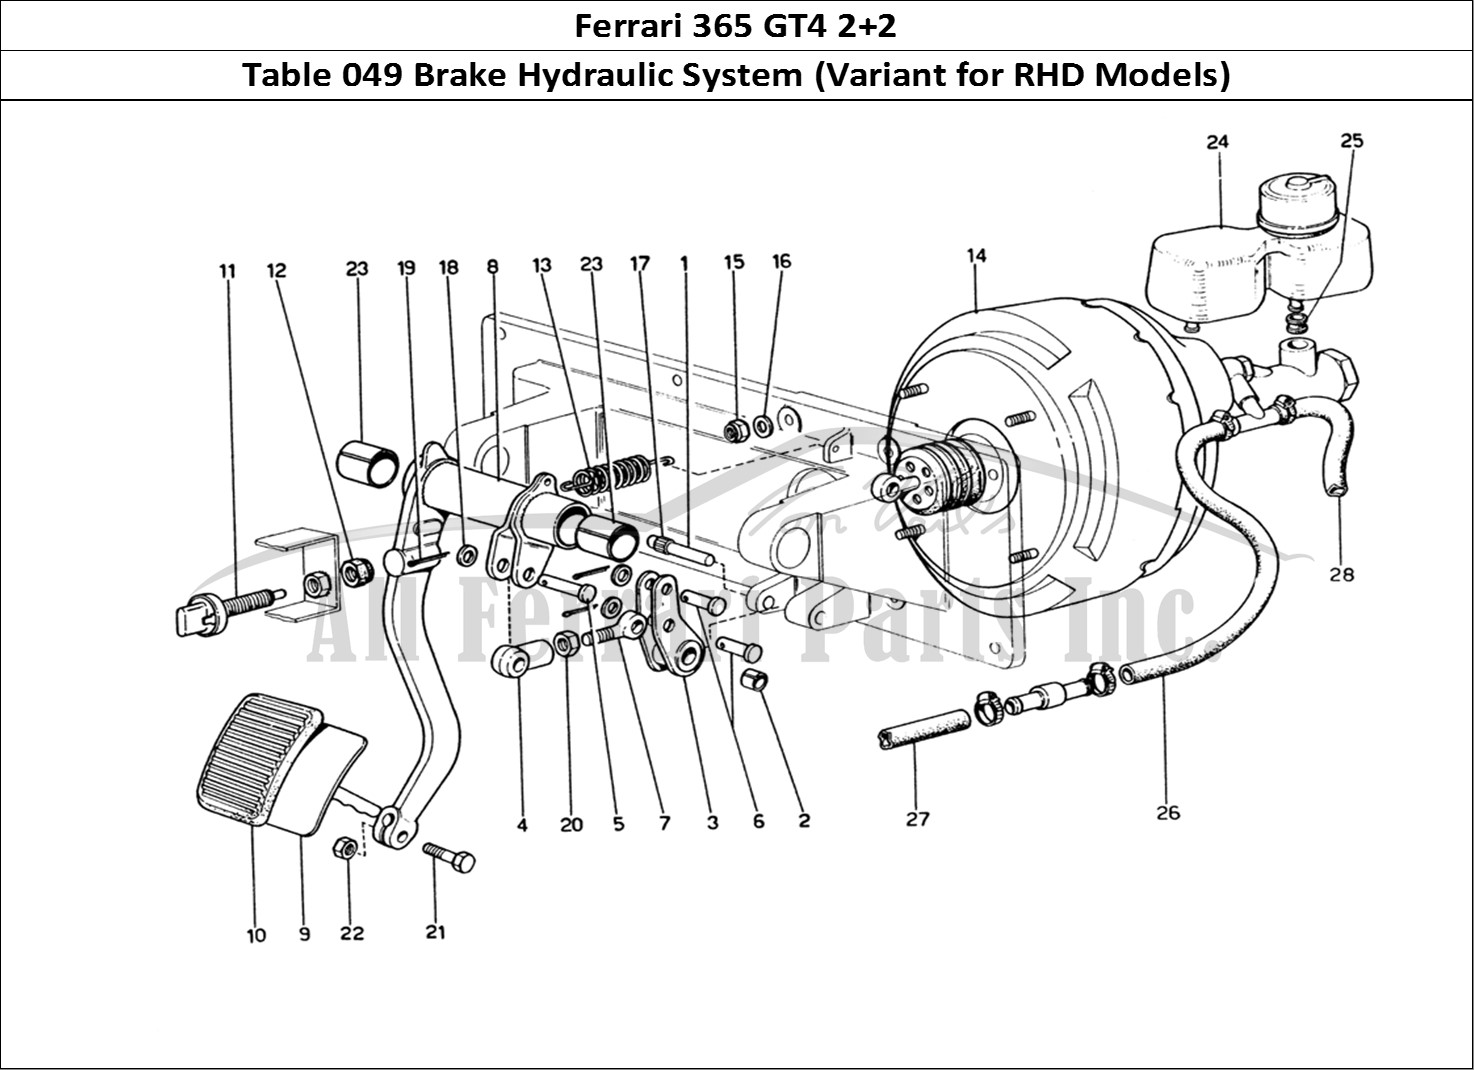 Ferrari Parts Ferrari 365 GT4 2+2 (1973) Page 049 Brake Hydraulic System (V